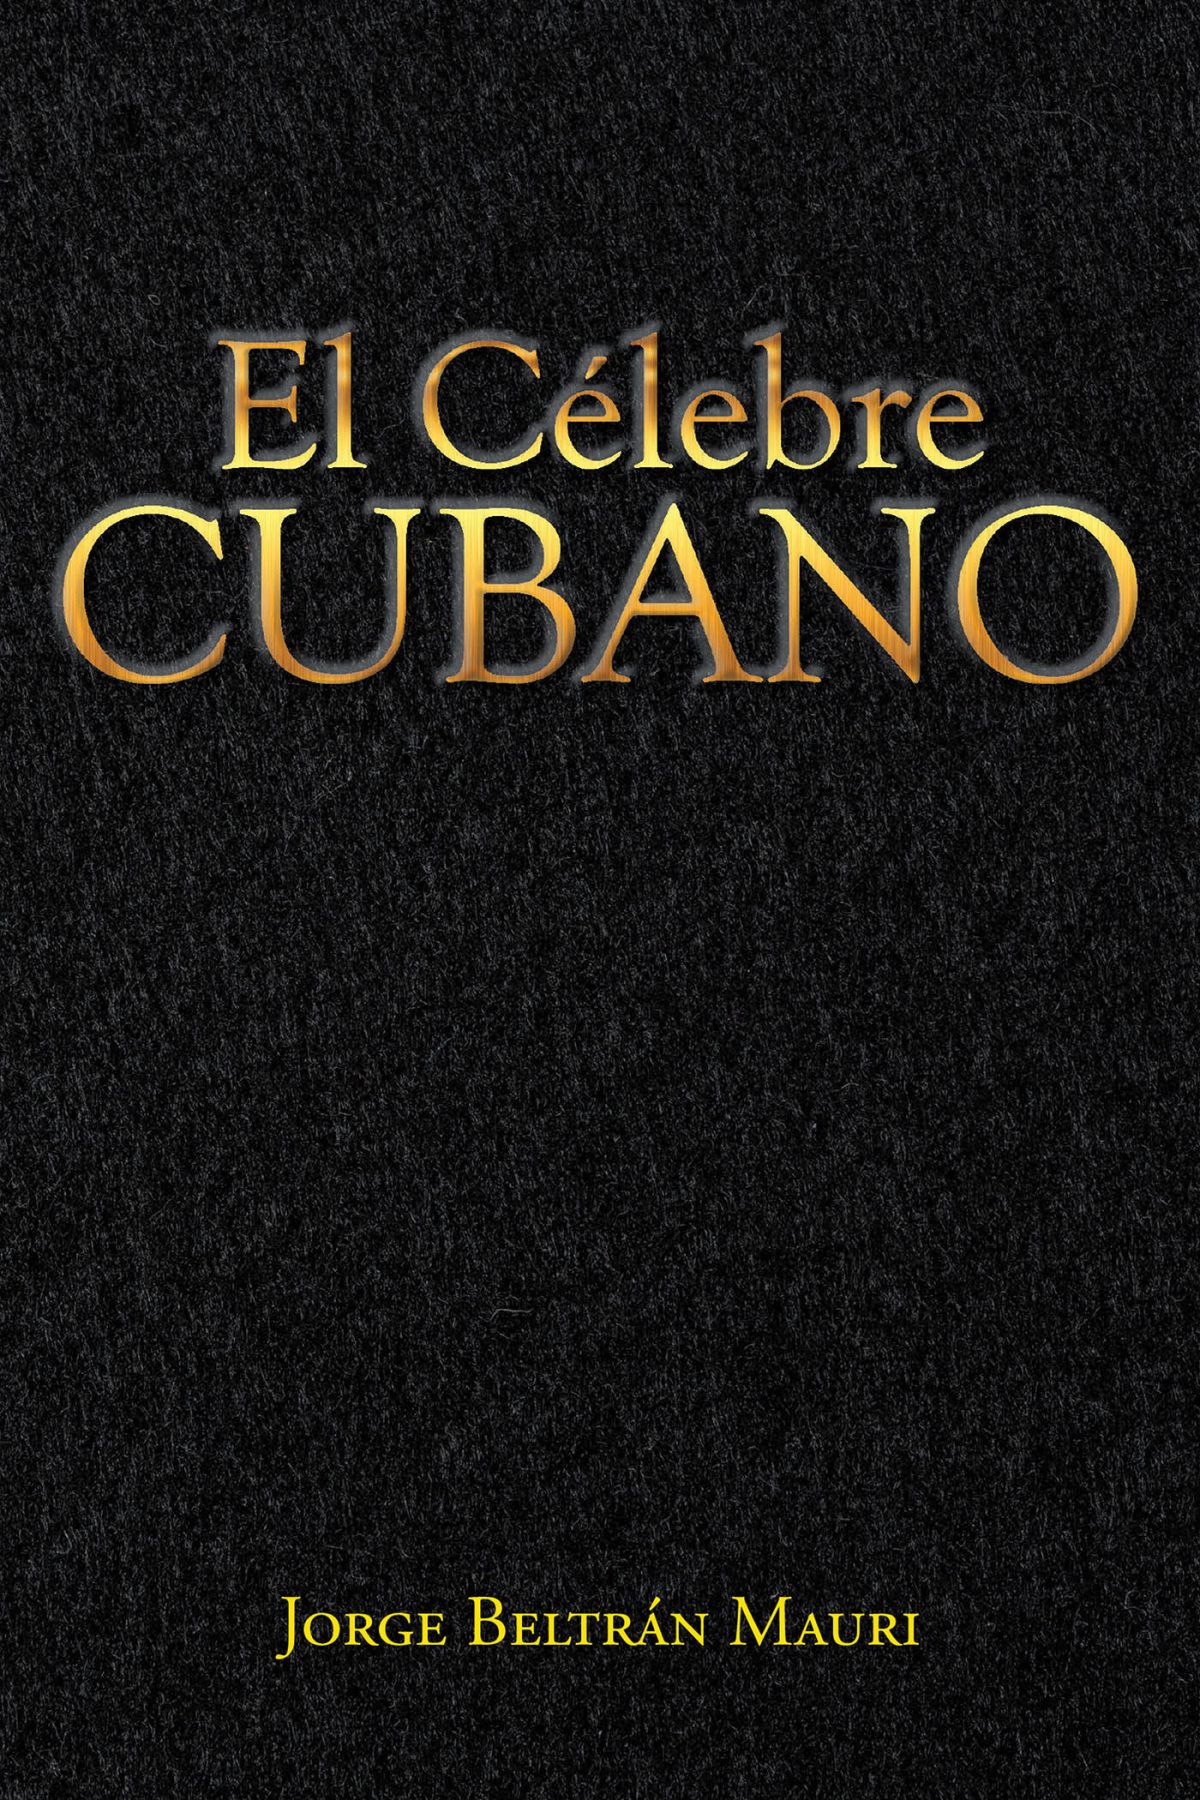 El Nuevo Libro De Jorge Beltrán Mauri, El Célebre Cubano, Una Gran Obra, Una Descripción Realista Y Directa De Una Cuba Que Muchos Desconocen